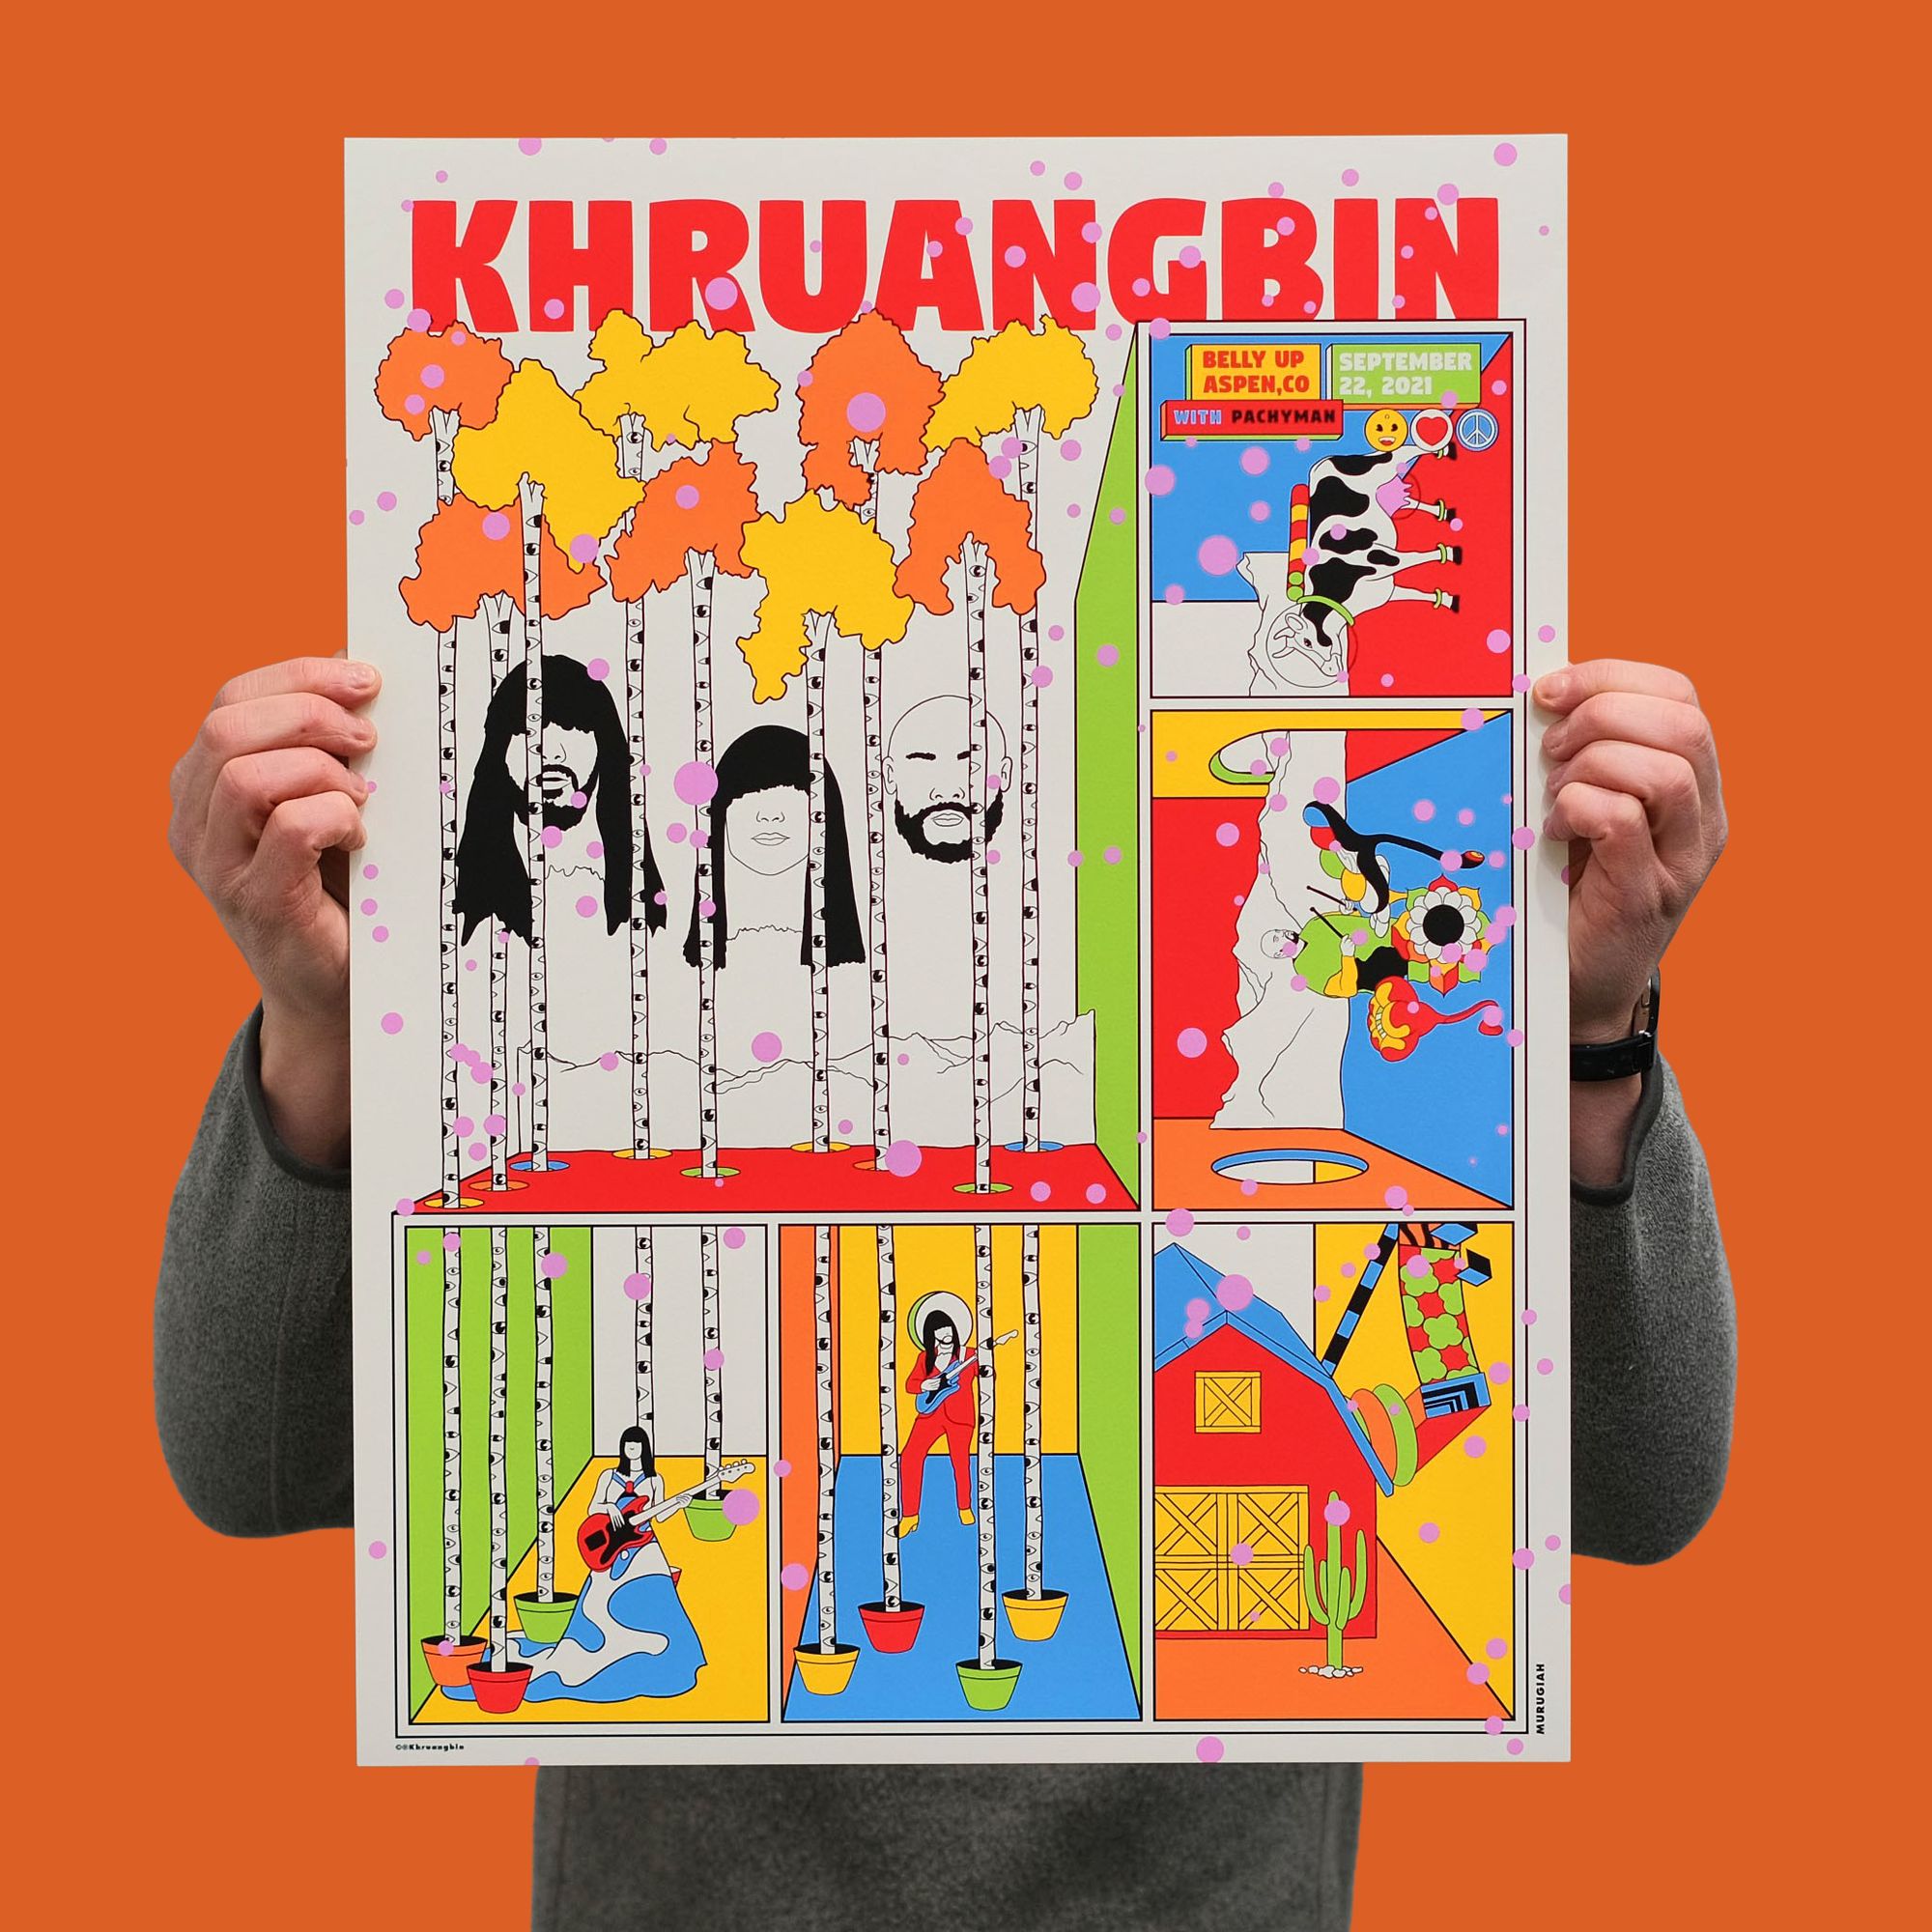 KHRUANGBIN gig poster by MURUGIAH